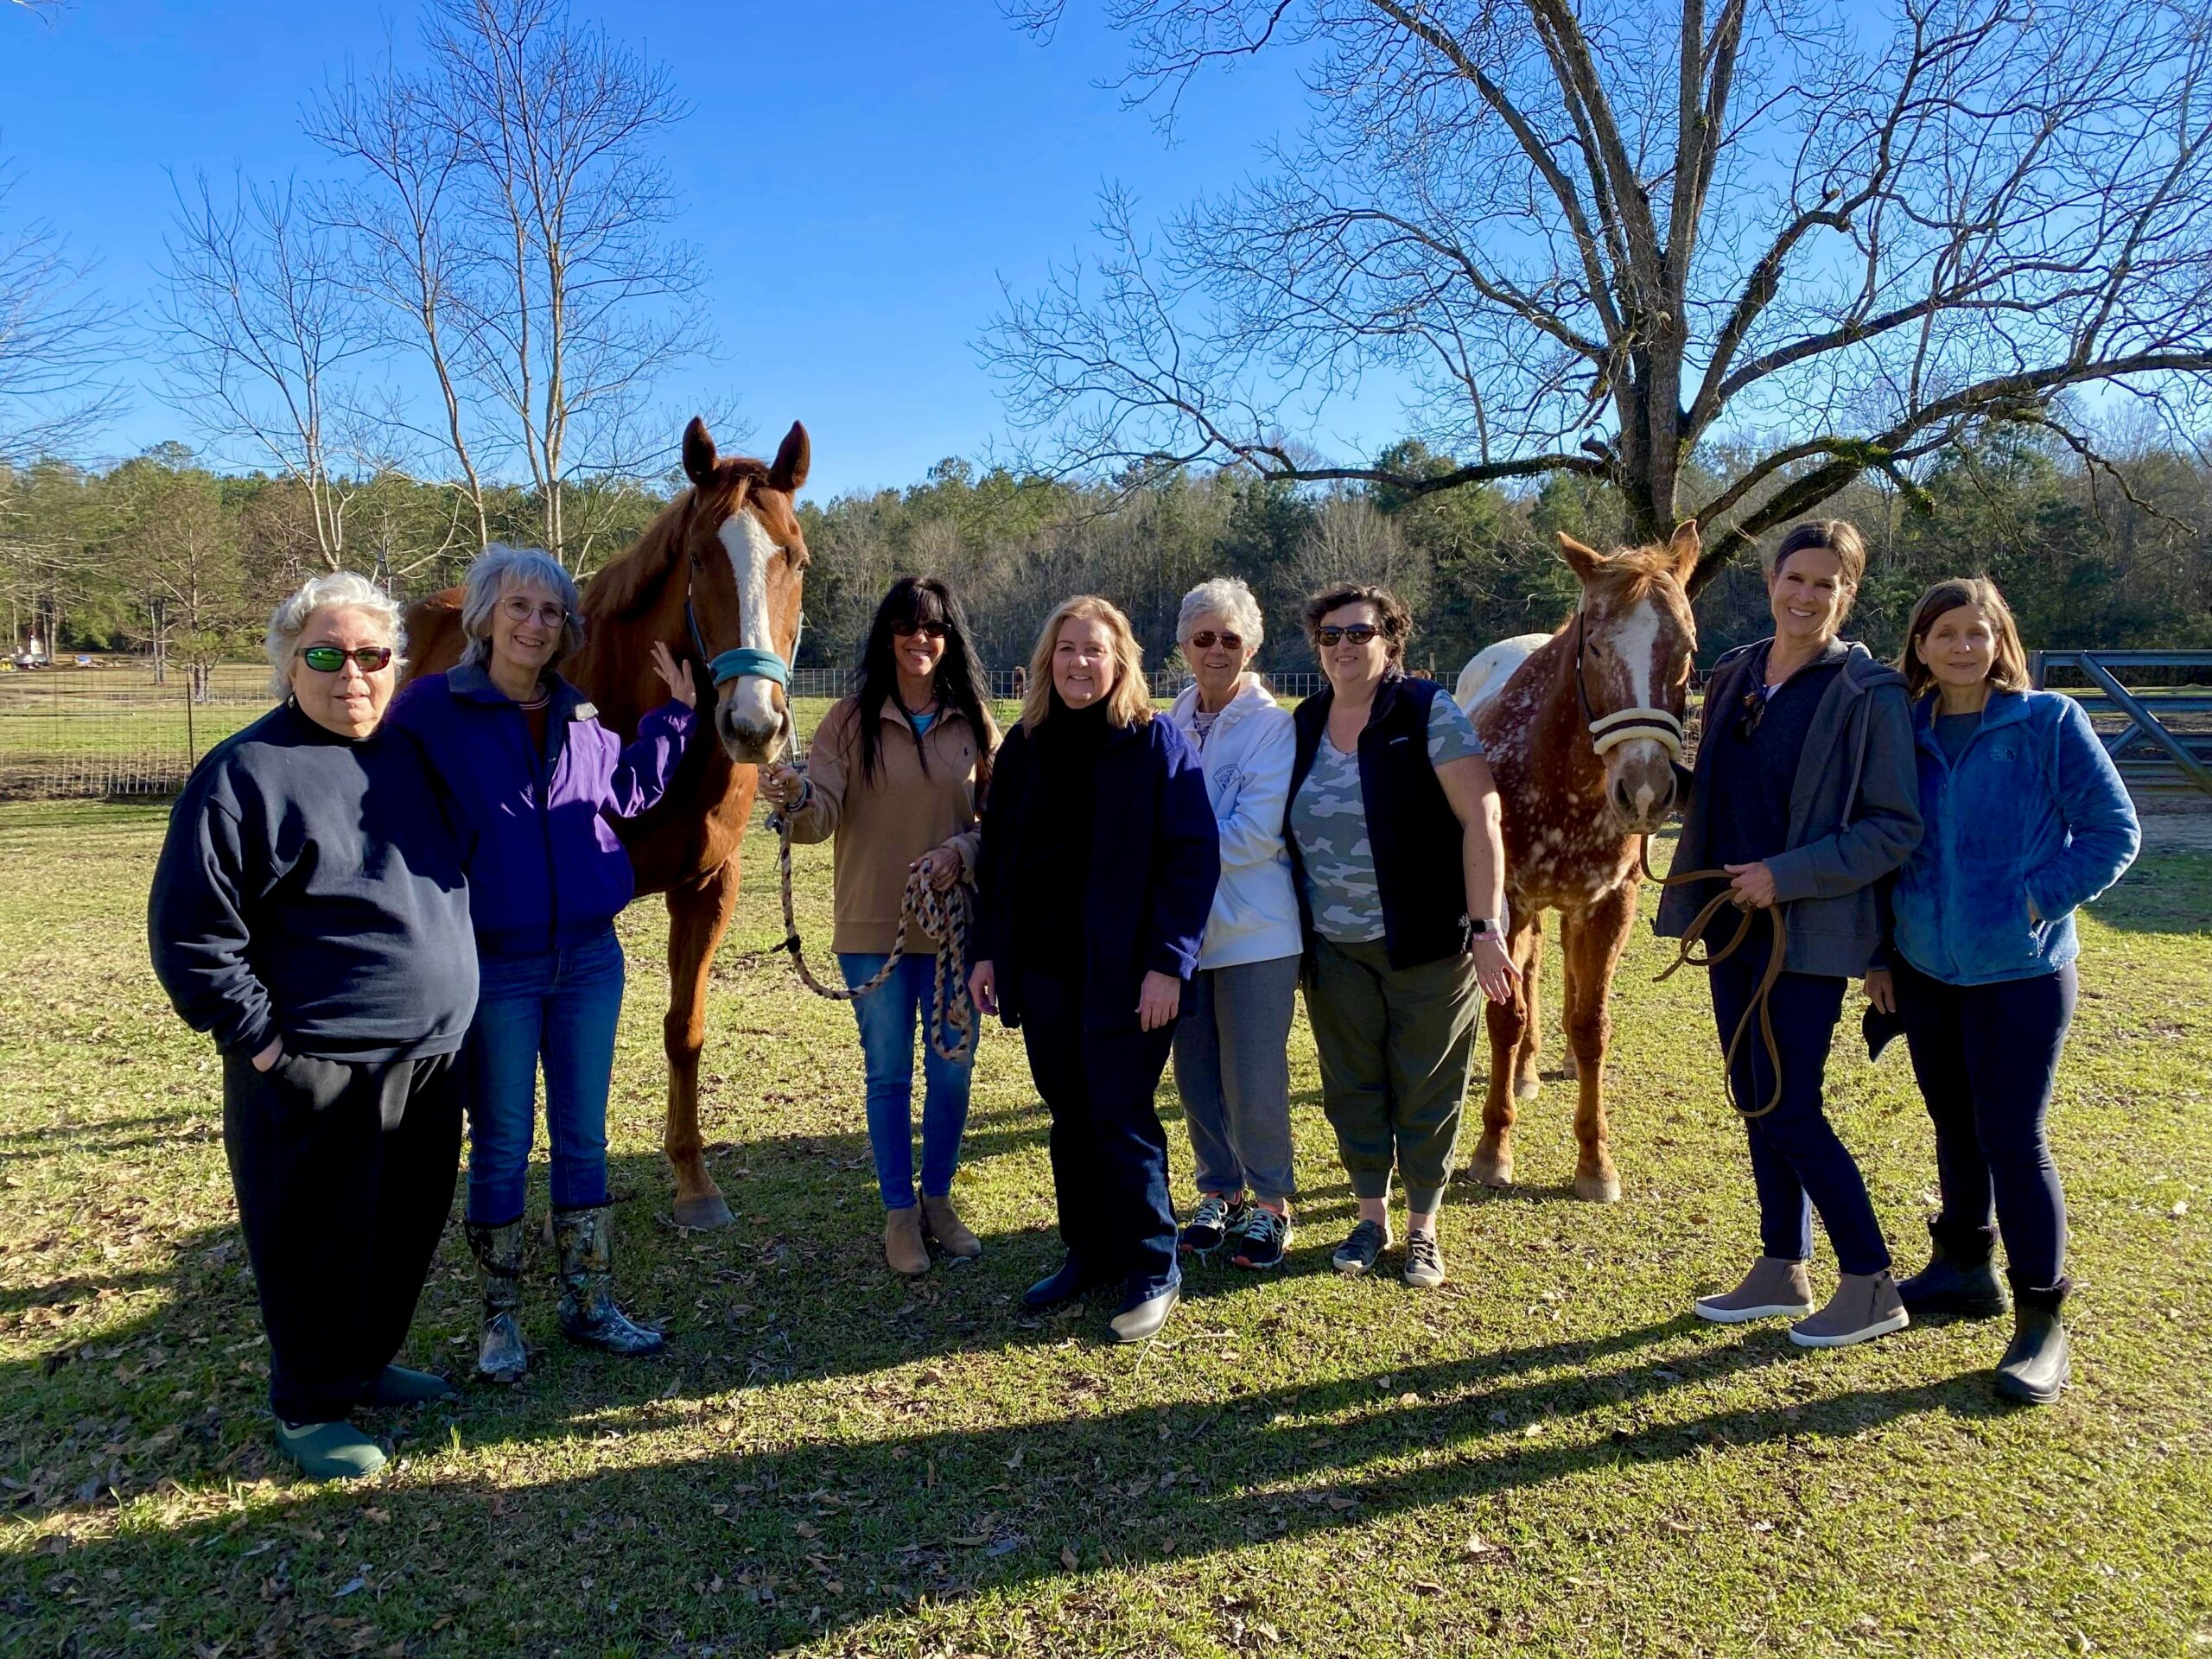 Ladies with horses